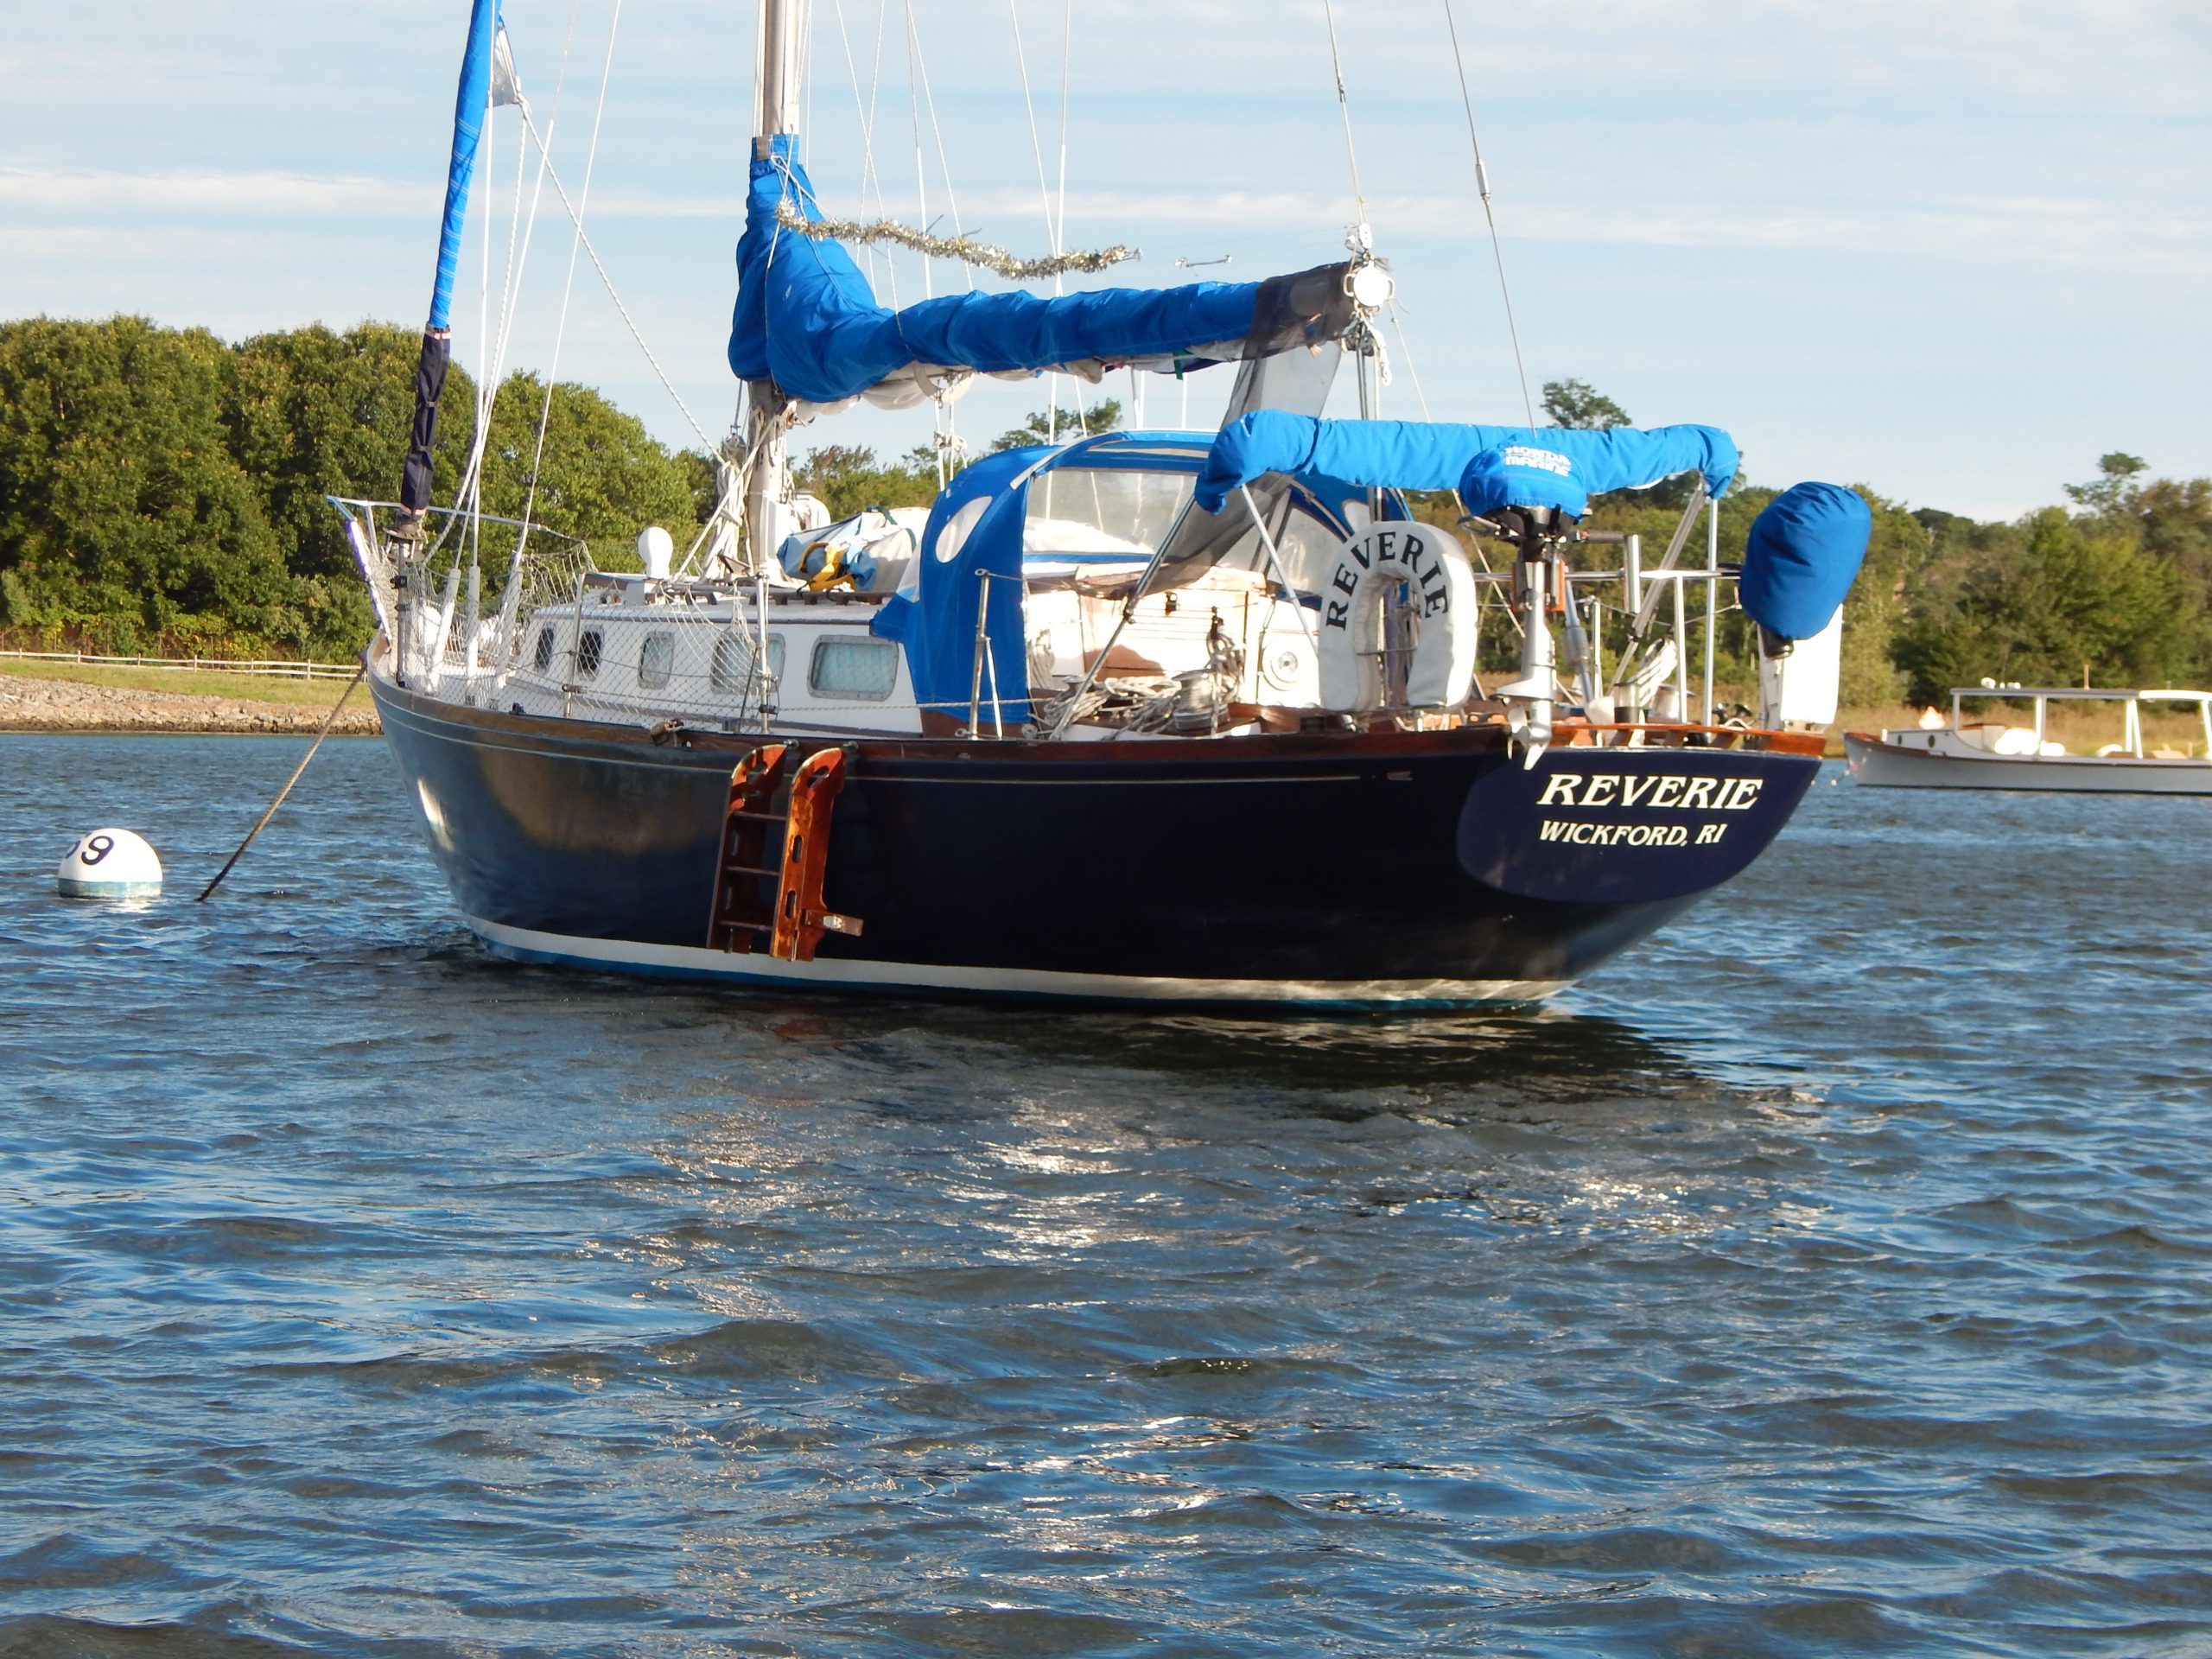 37' sailboat